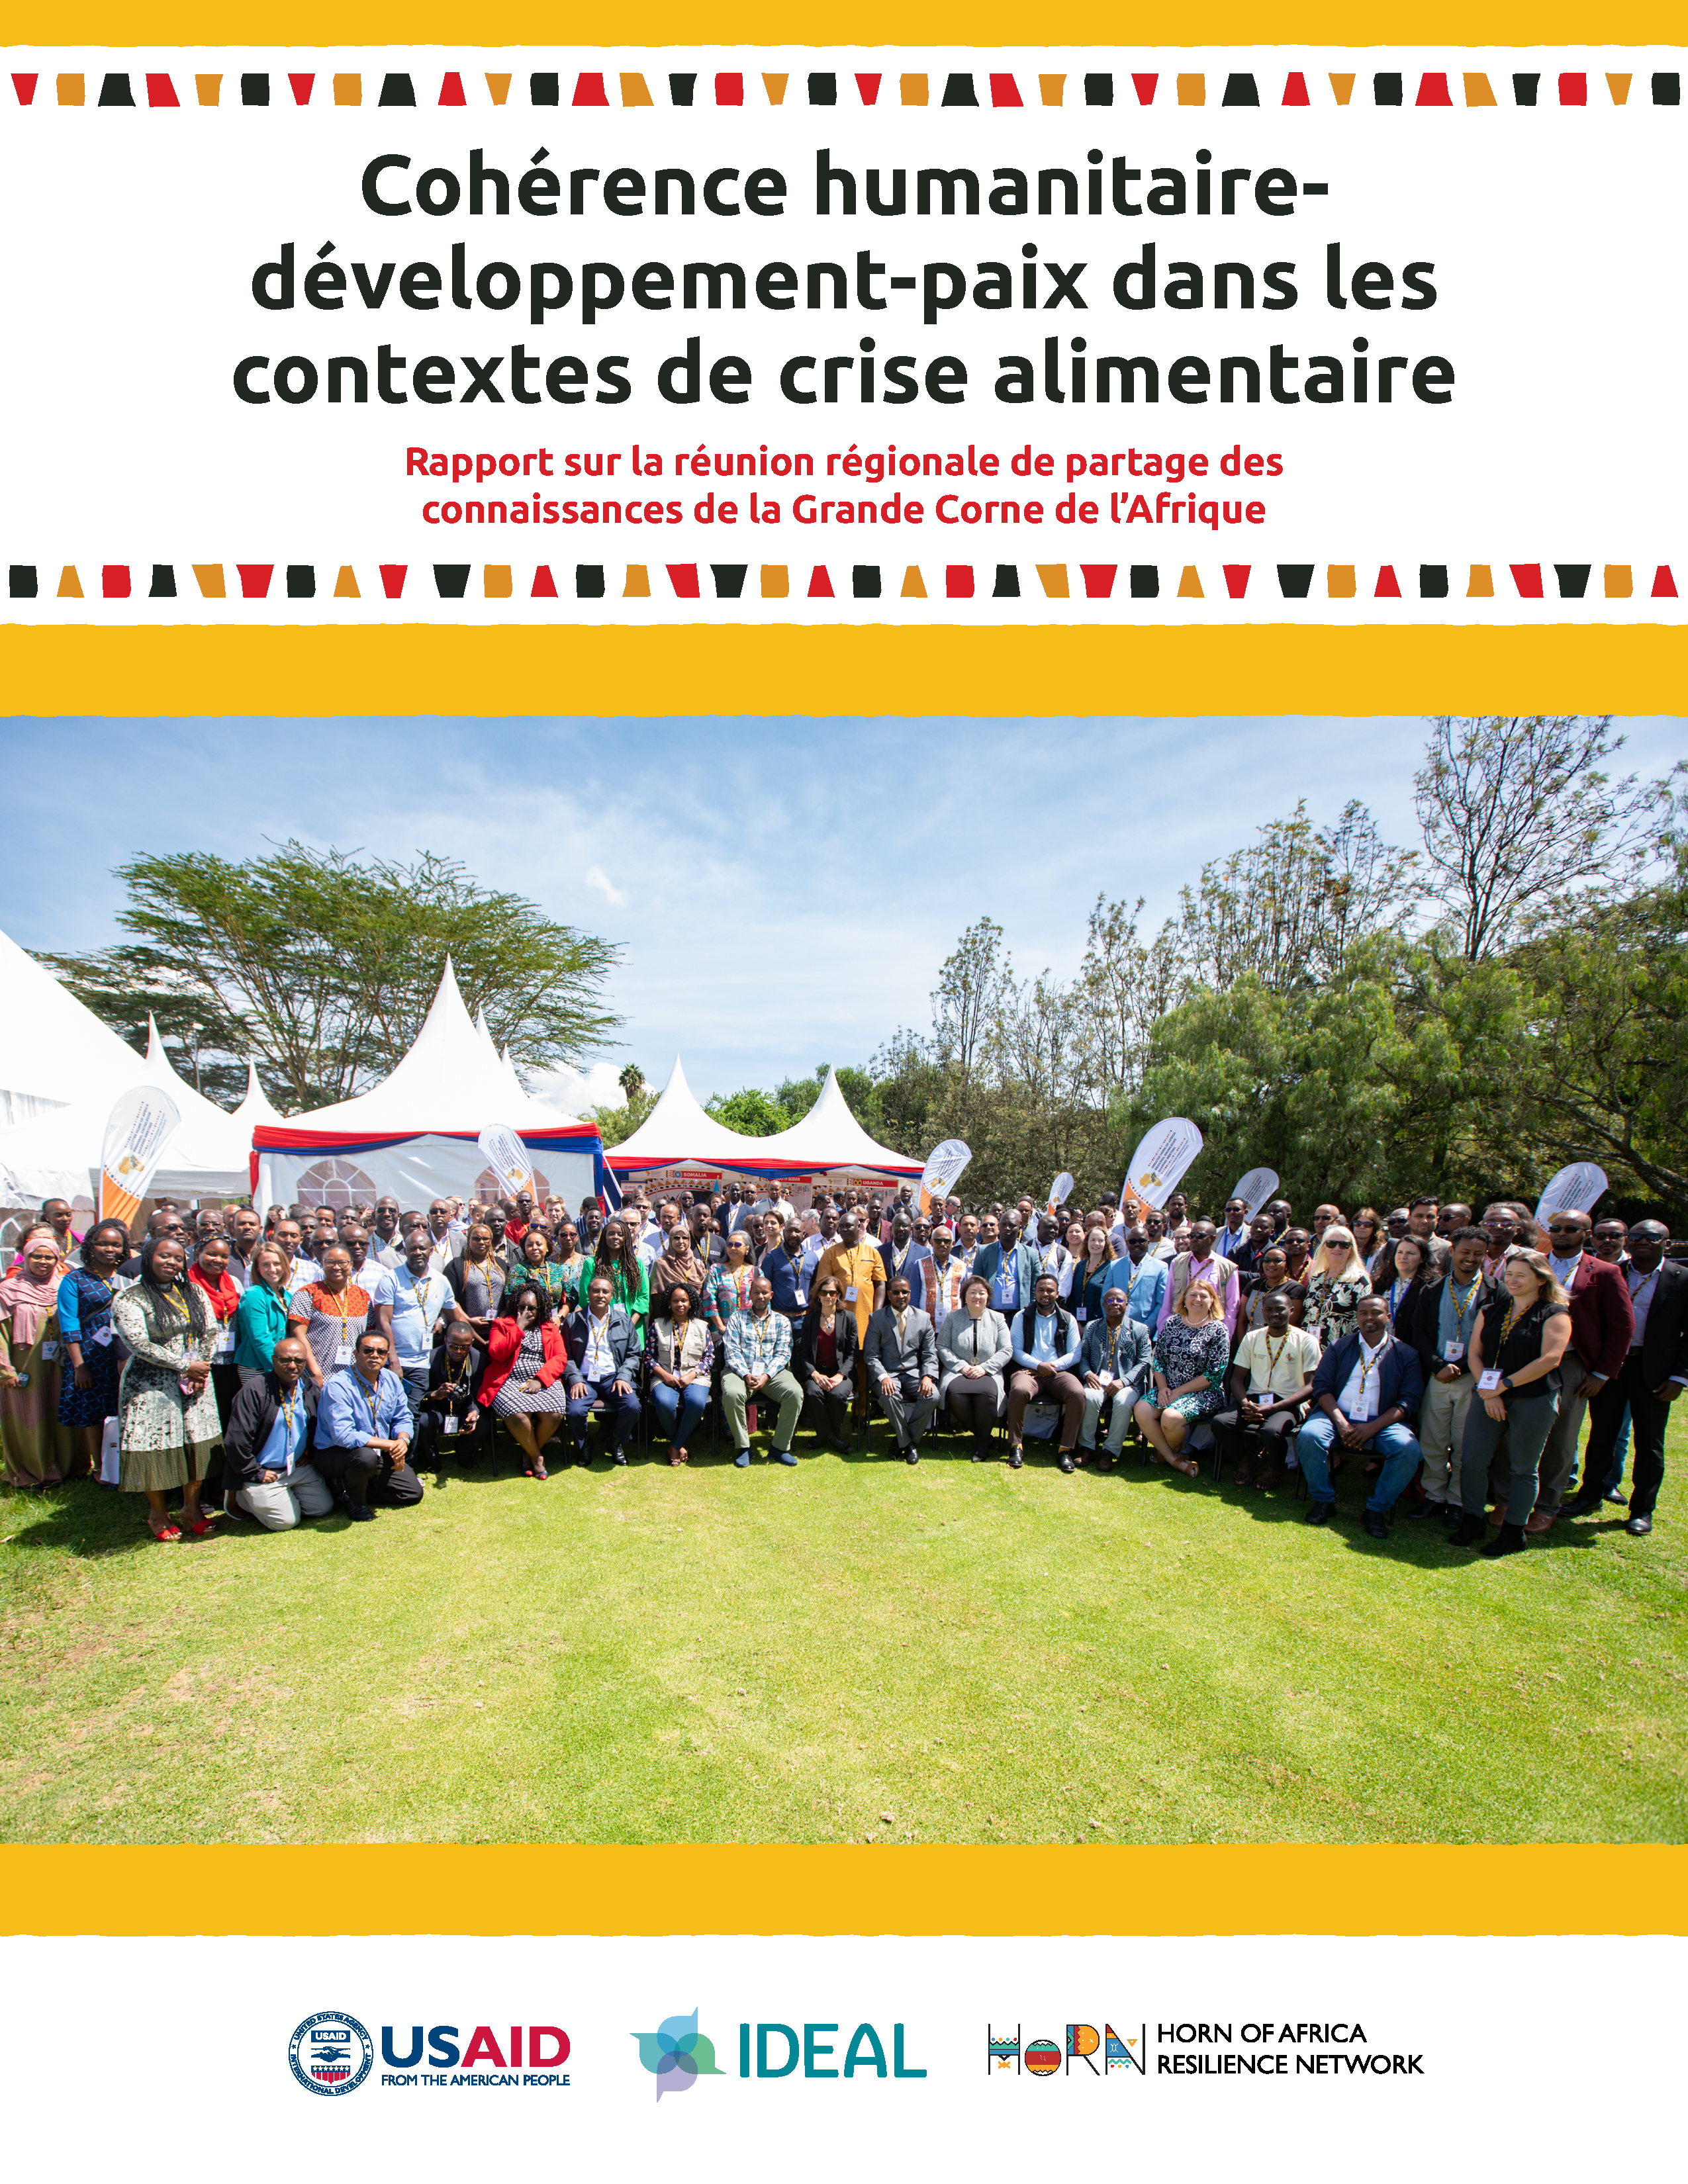 Cover page for Cohérence humanitaire-développement-paix dans les contextes de crise alimentaire